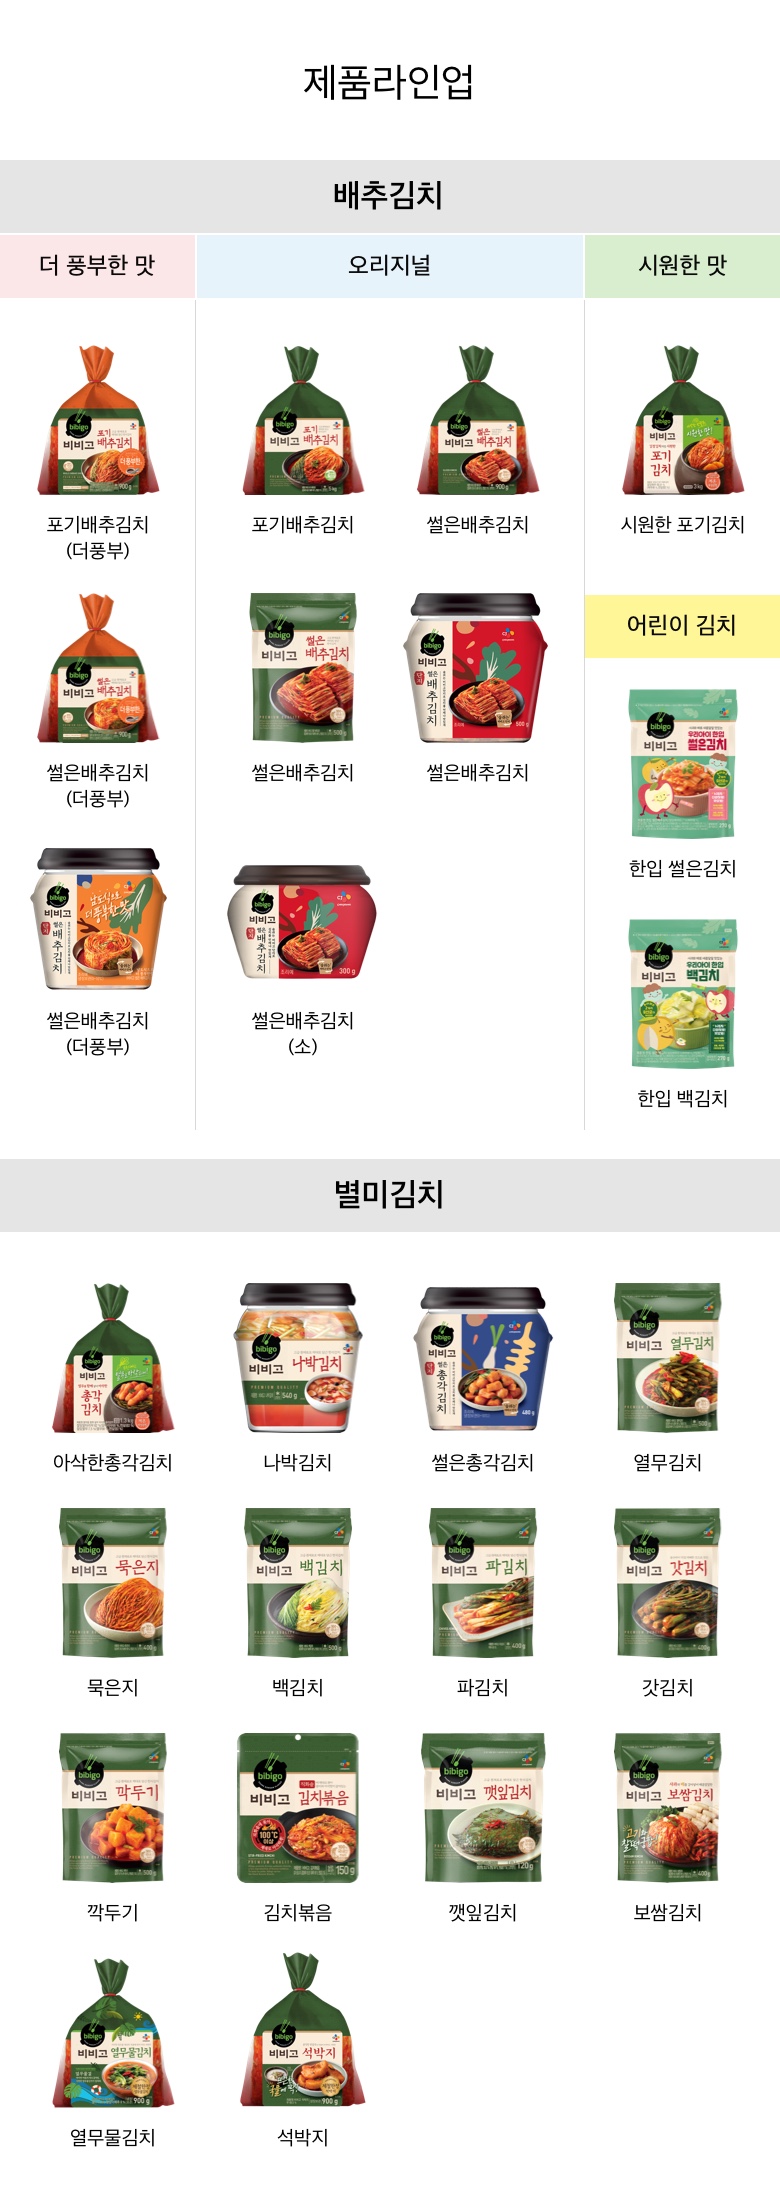 비비고-열무김치-15kg-1000140145298